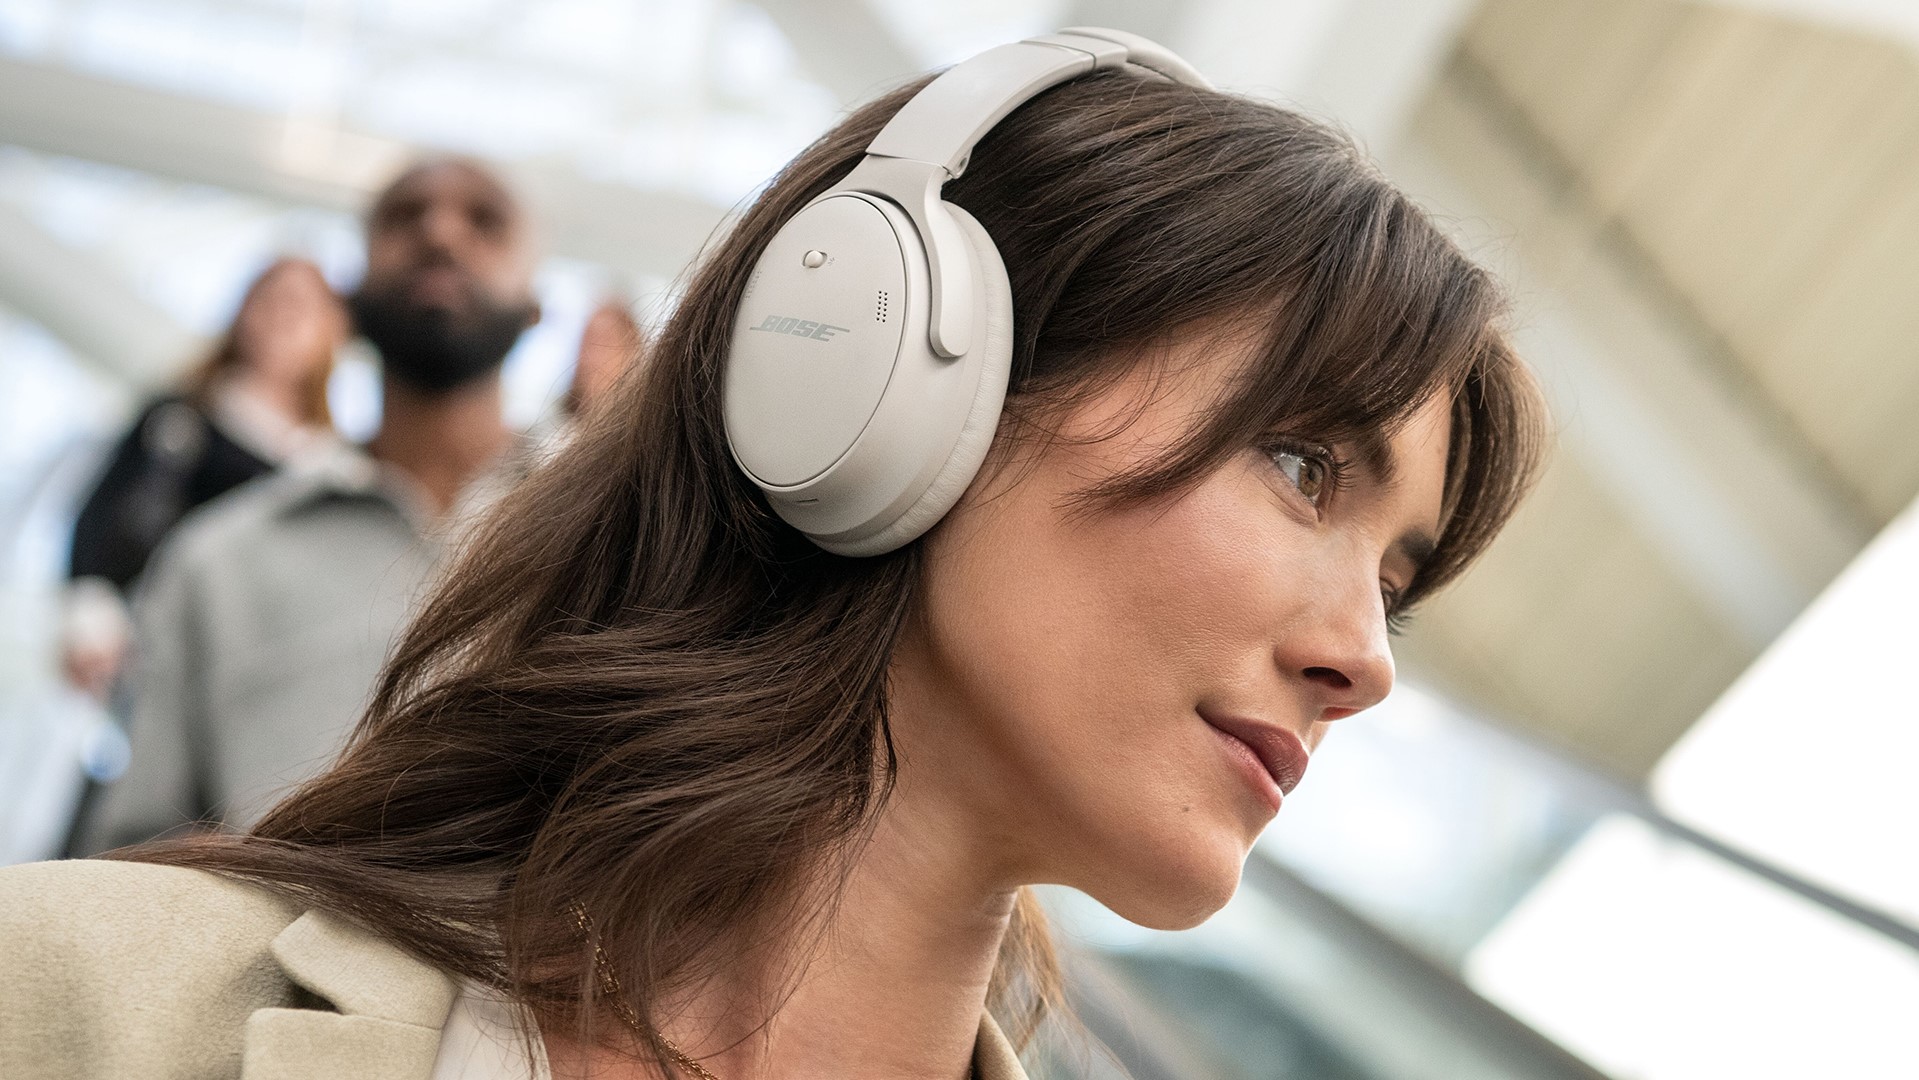 Bose công bố ra mắt tai nghe QuietComfort 45 với thiết kế mới, cải thiện nhiều tính năng, giá không hề rẻ